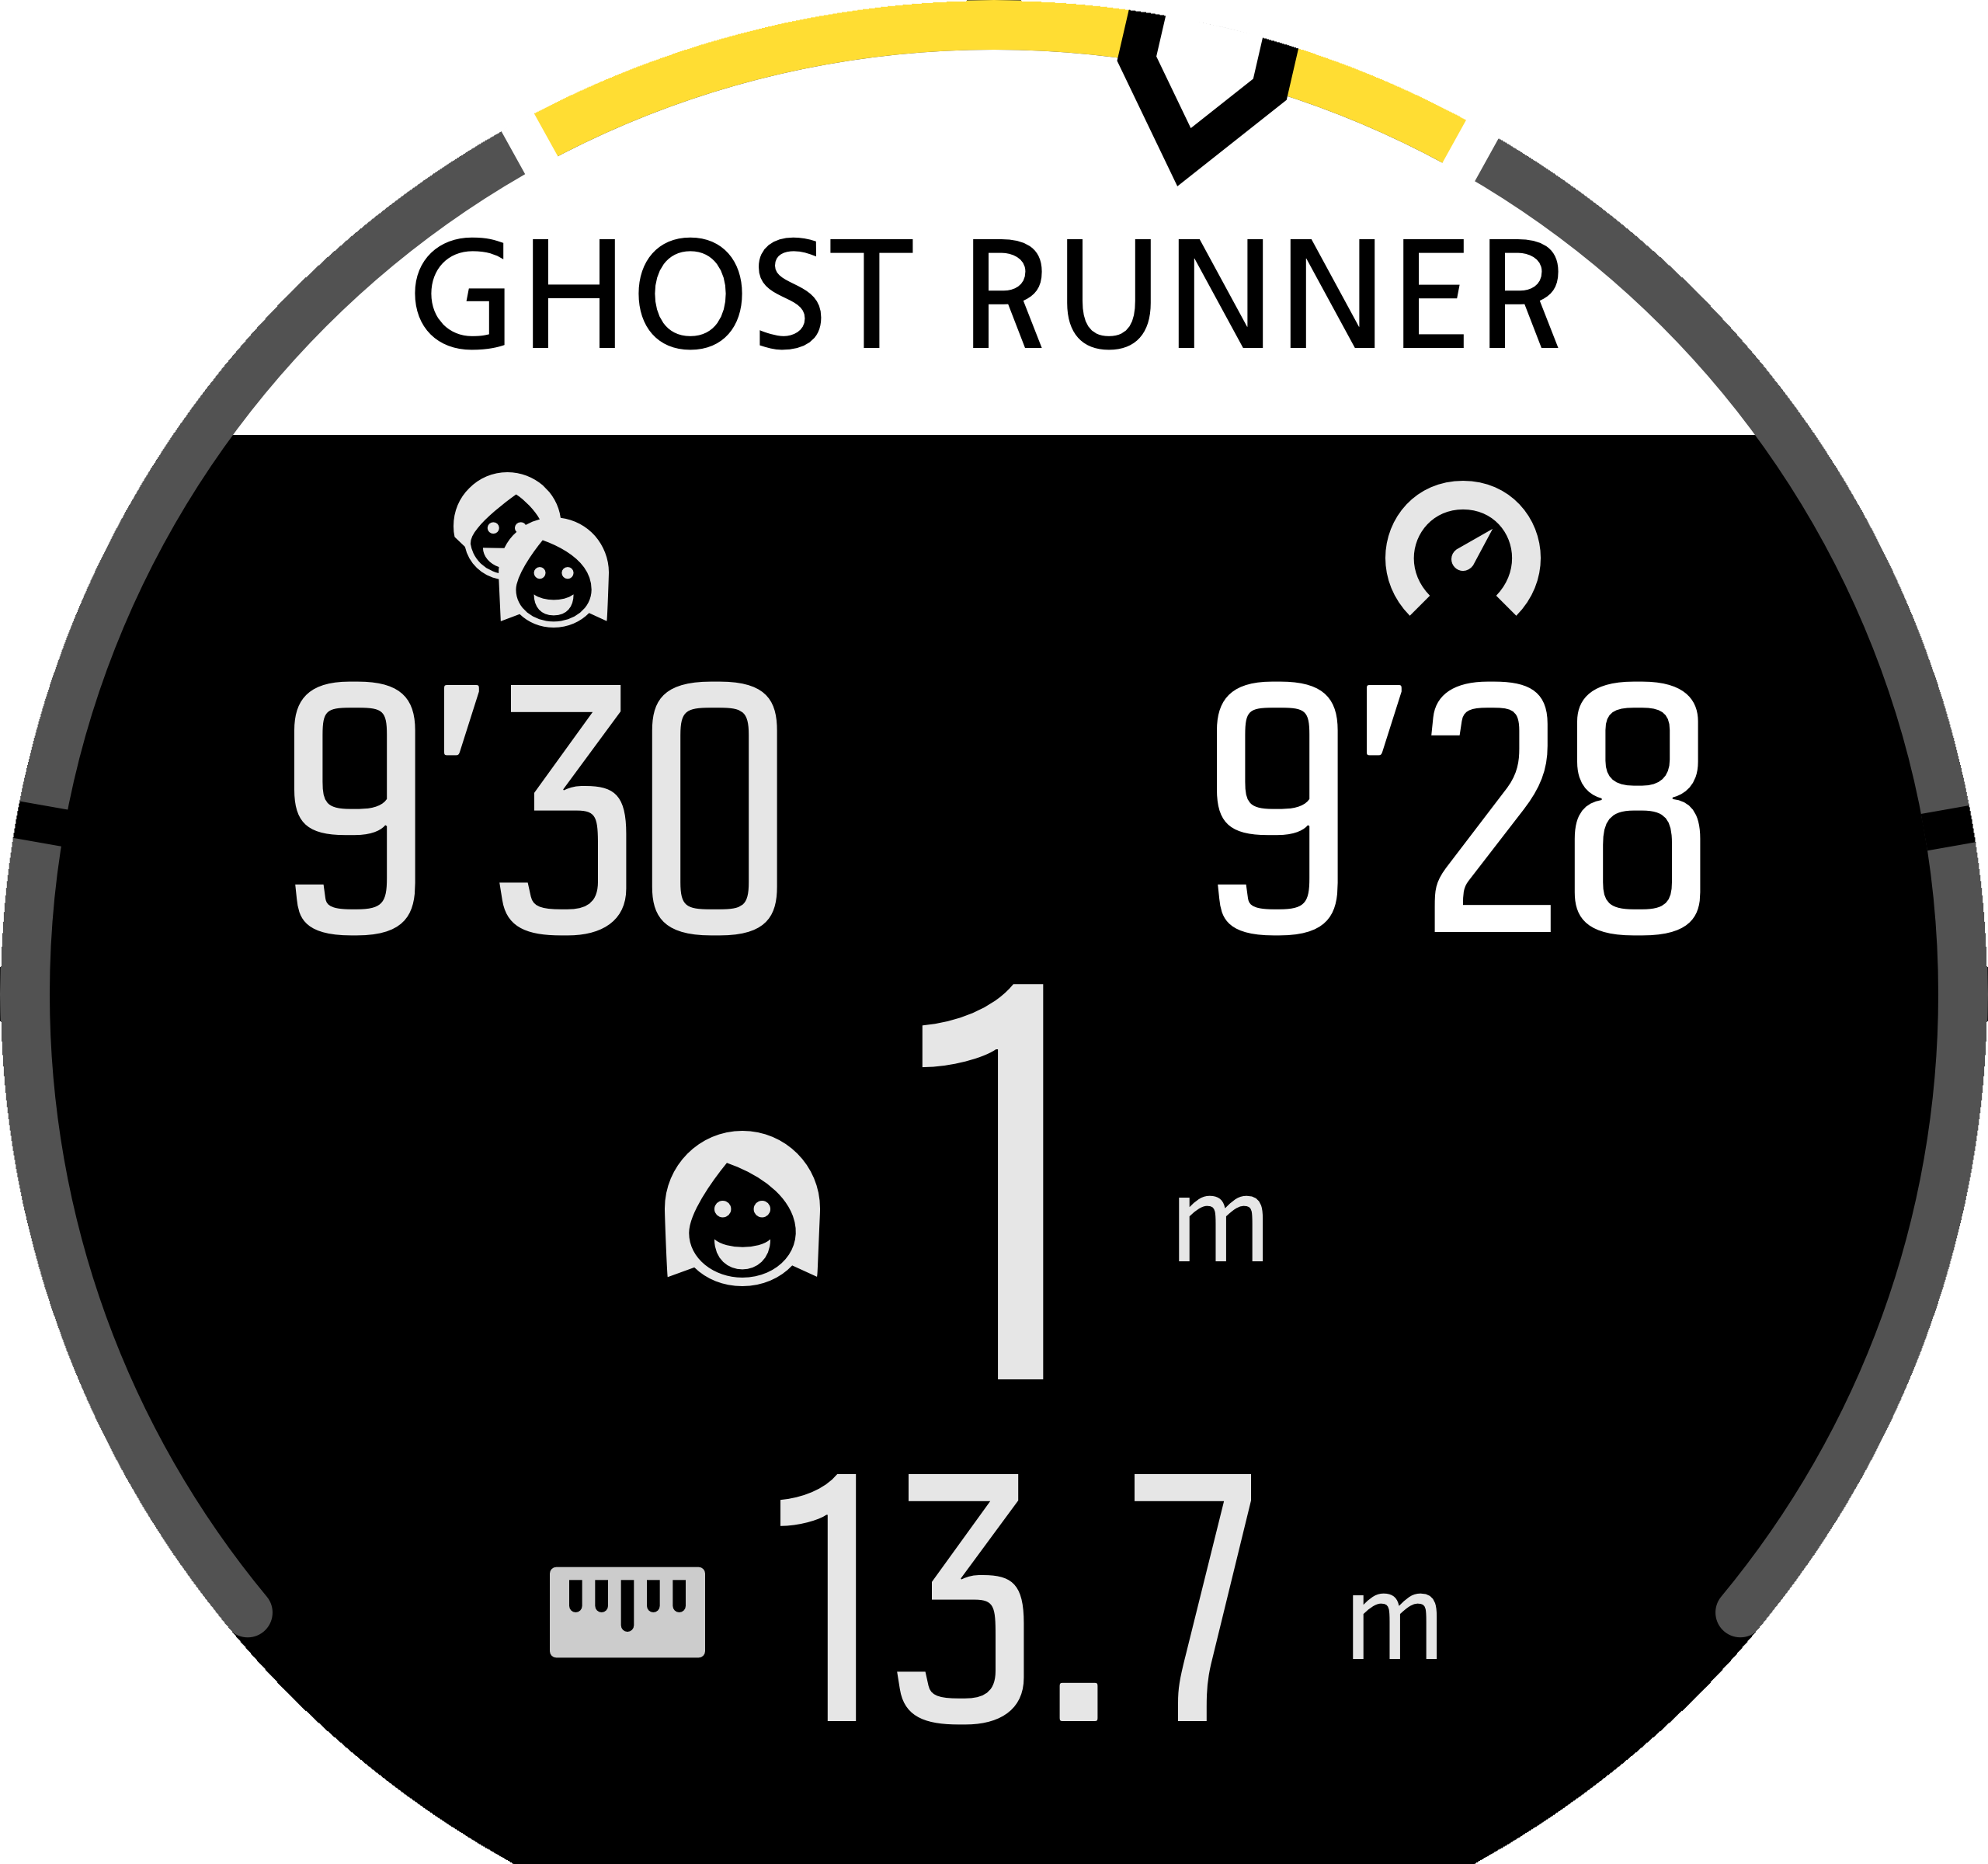 Ghost runner